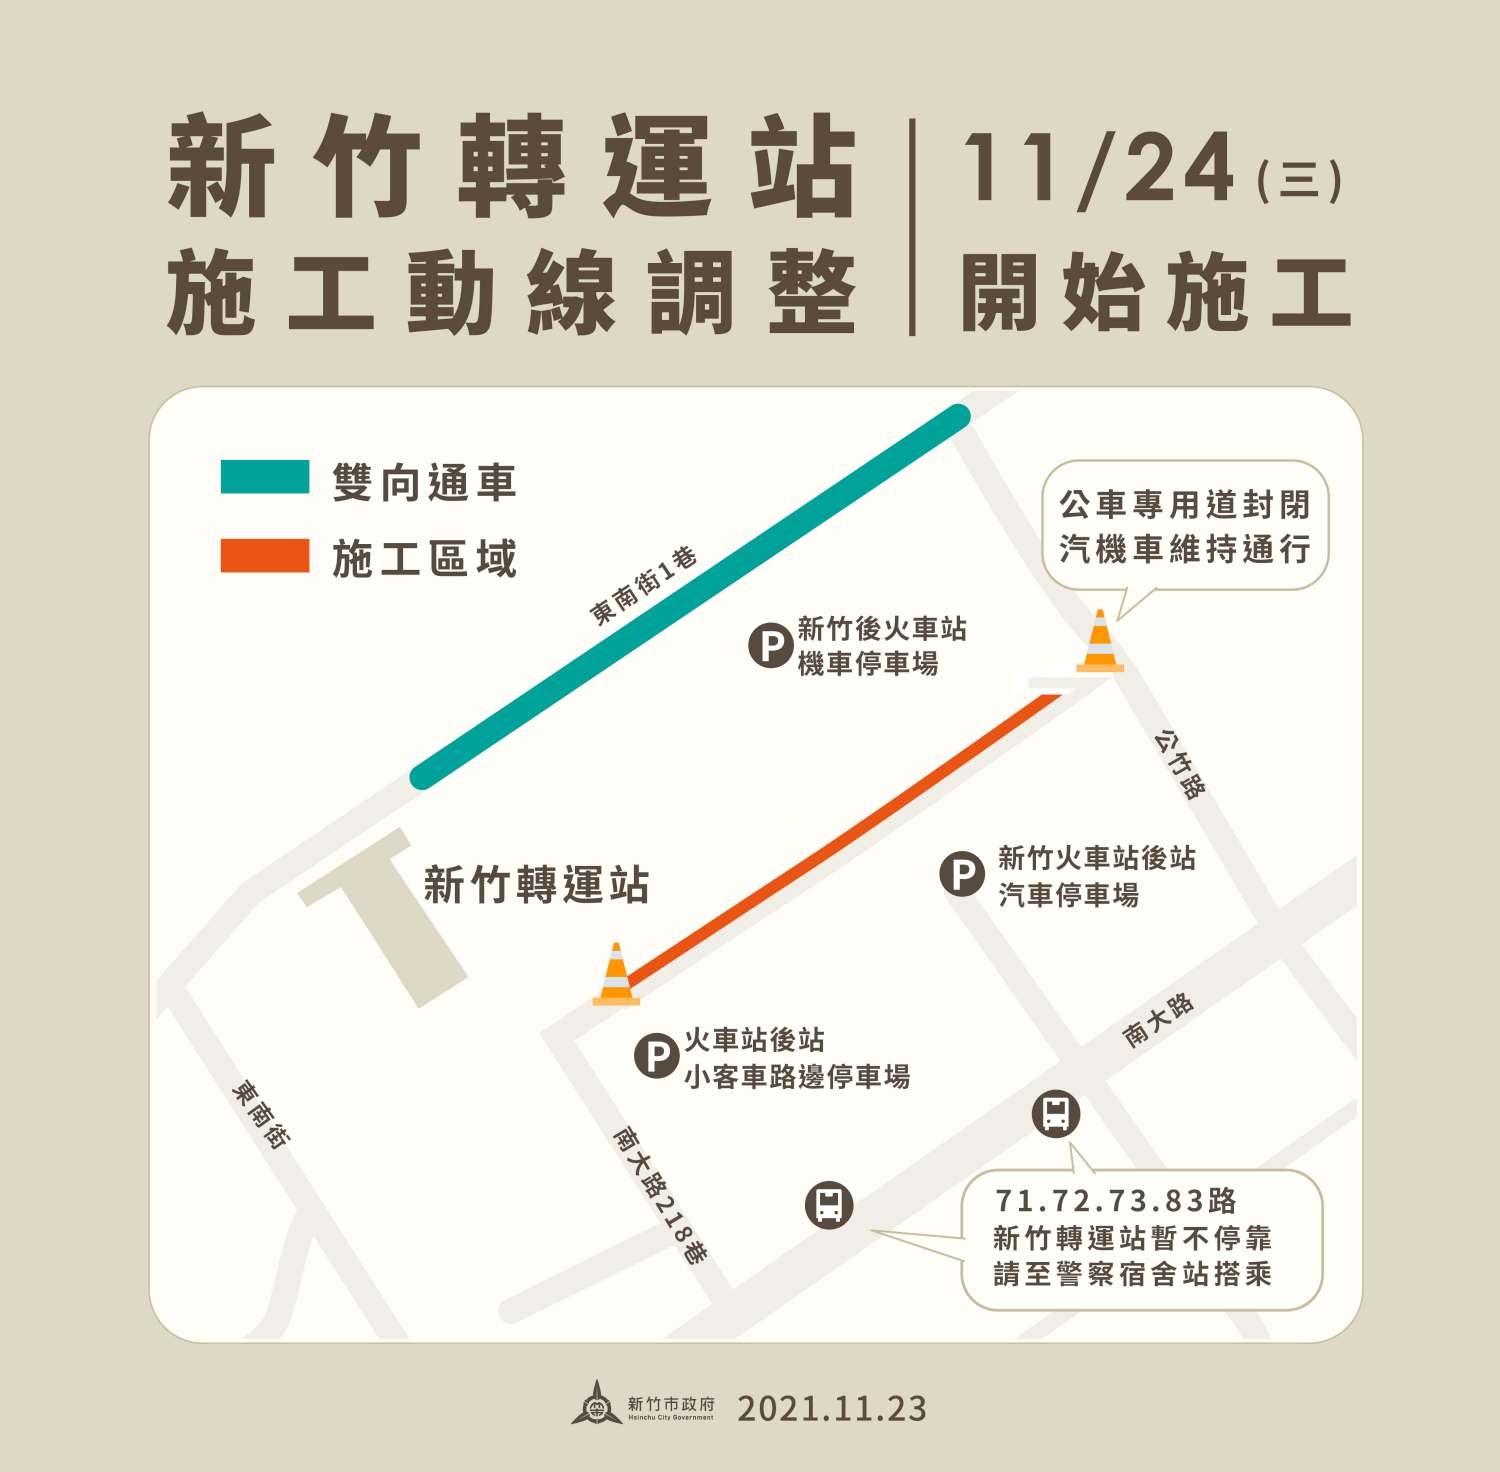 新竹轉運站公車專用道施工 車輛配合改道、部分公車轉站搭乘